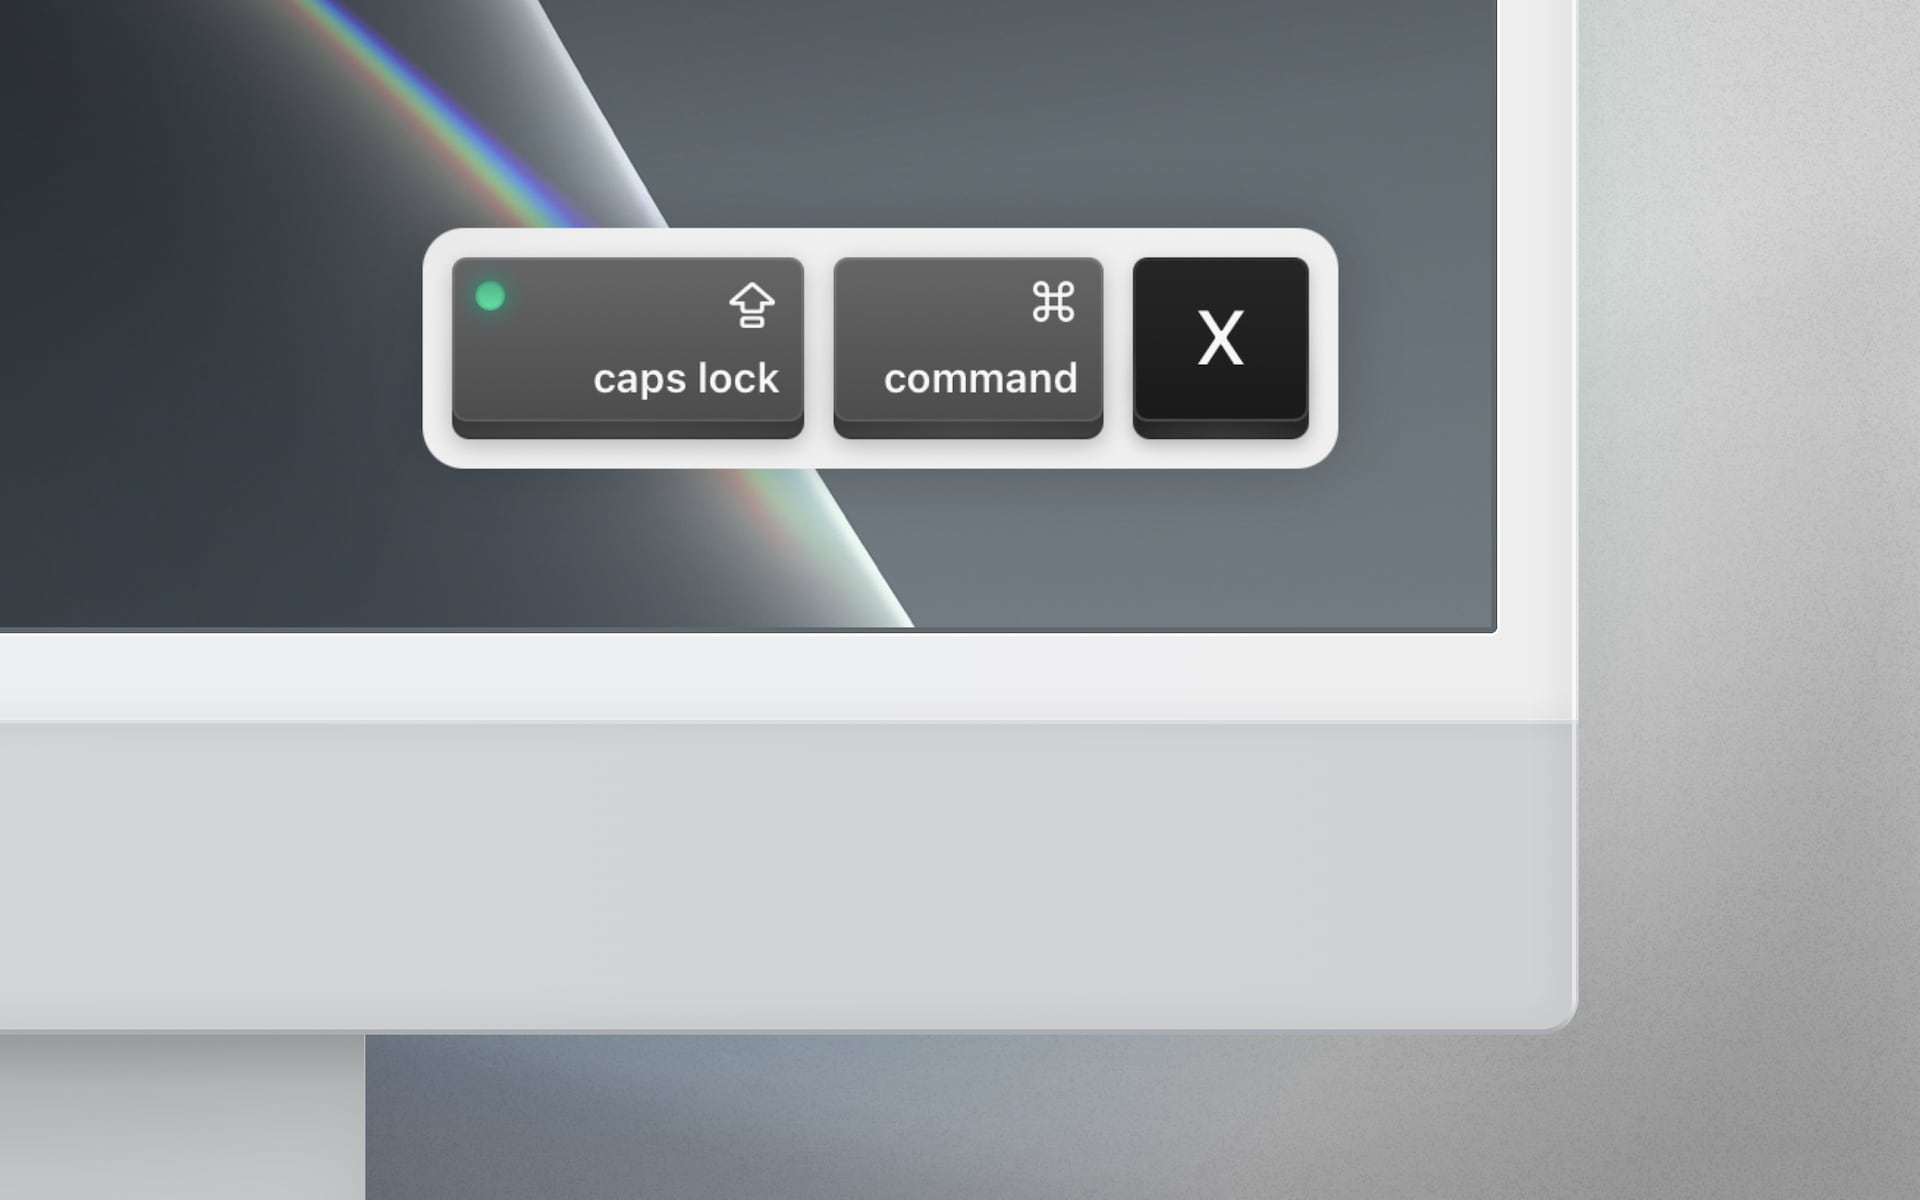 An image showing a keystroke visualization on an iMac screen.